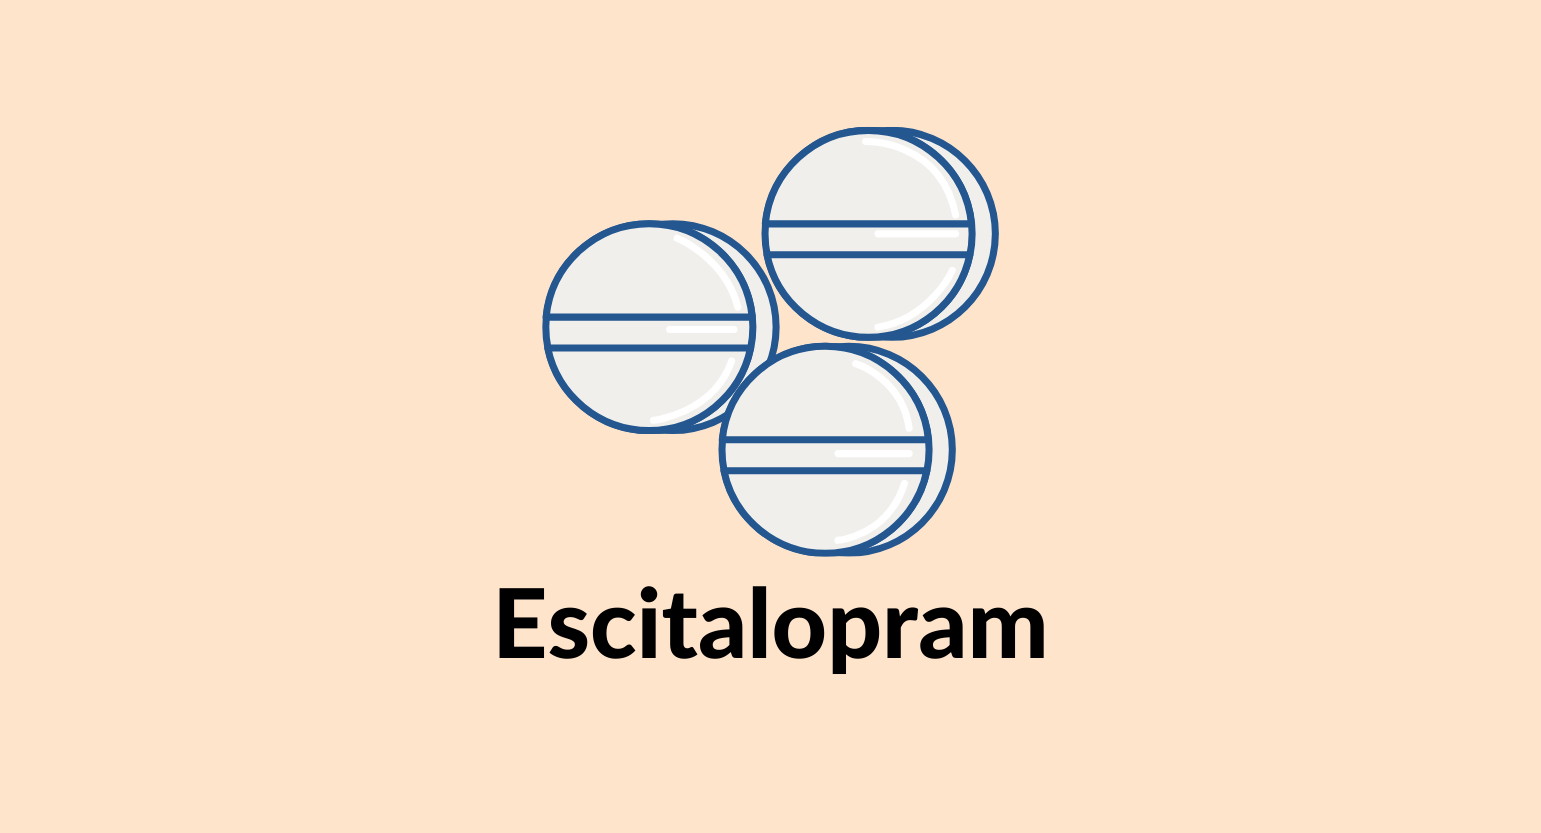 Illustration of escitalopram tablets